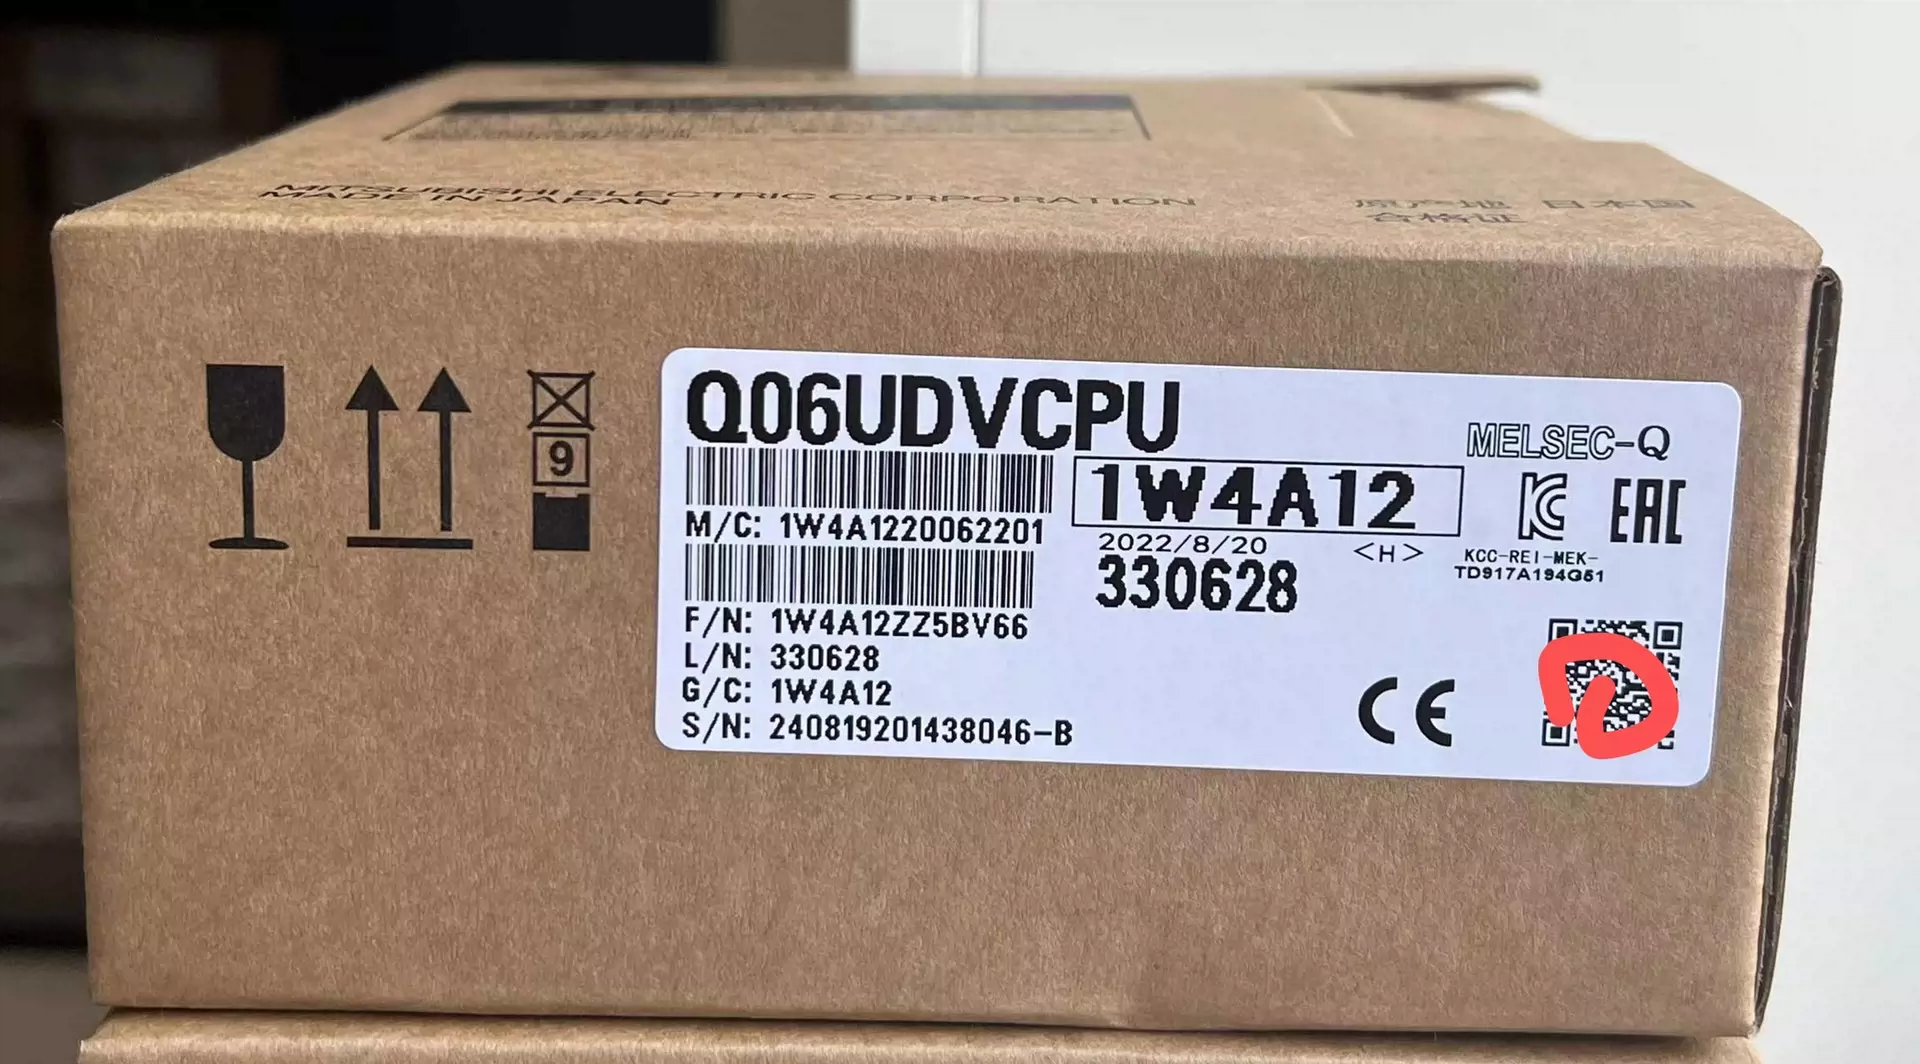 三菱Q06udvcpu 原装现货全新-Taobao